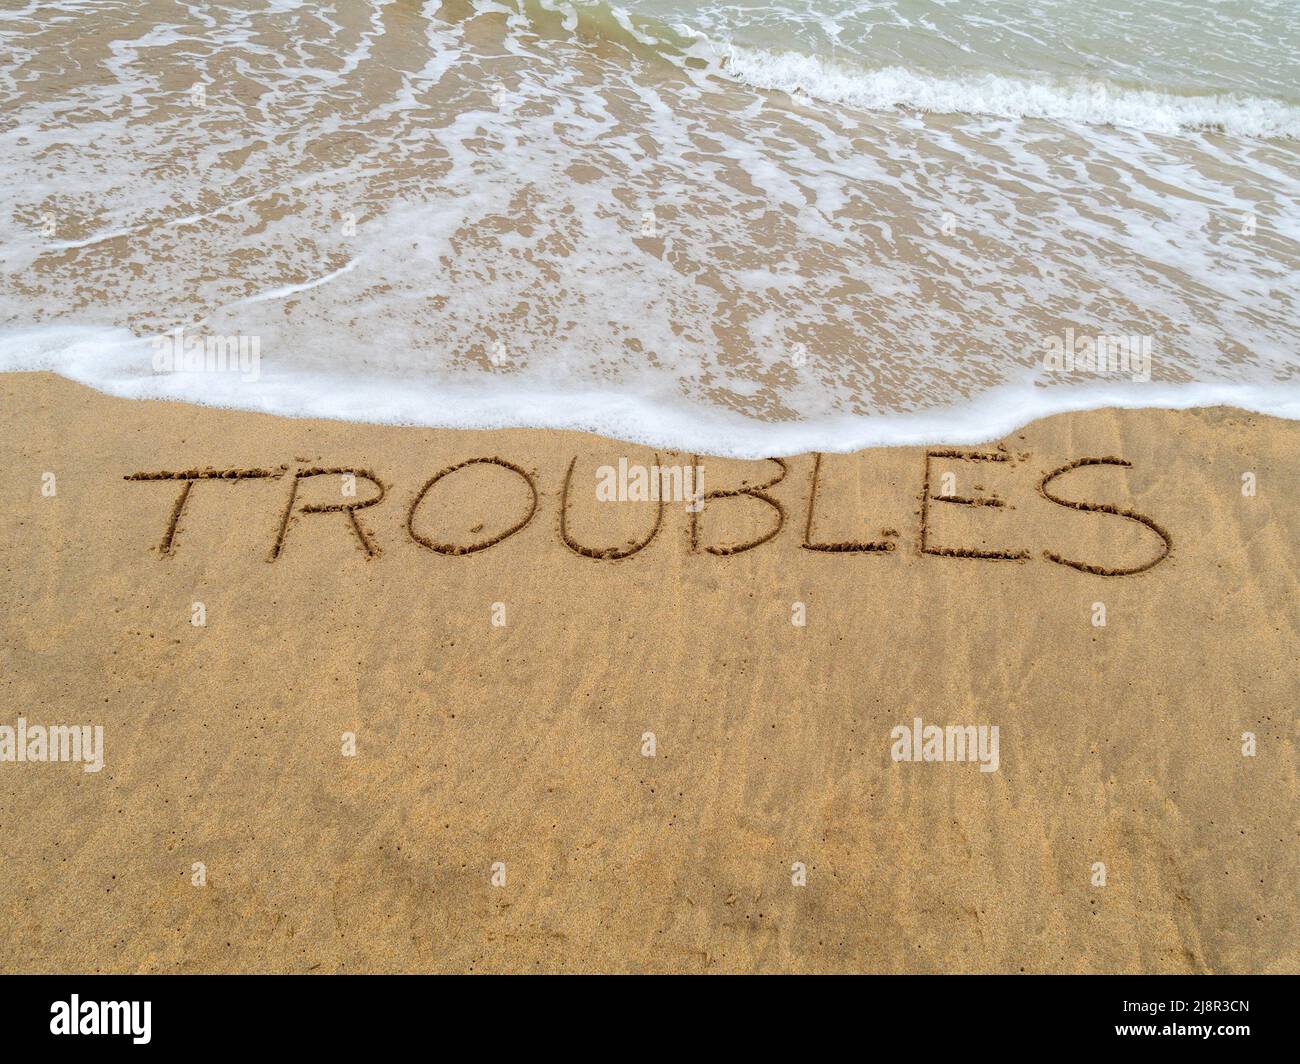 Concept image - pour illustrer le stress de lavage en prenant des vacances comme les vagues sur une plage de sable laver loin le mot "problèmes" écrit dans le sable. Banque D'Images